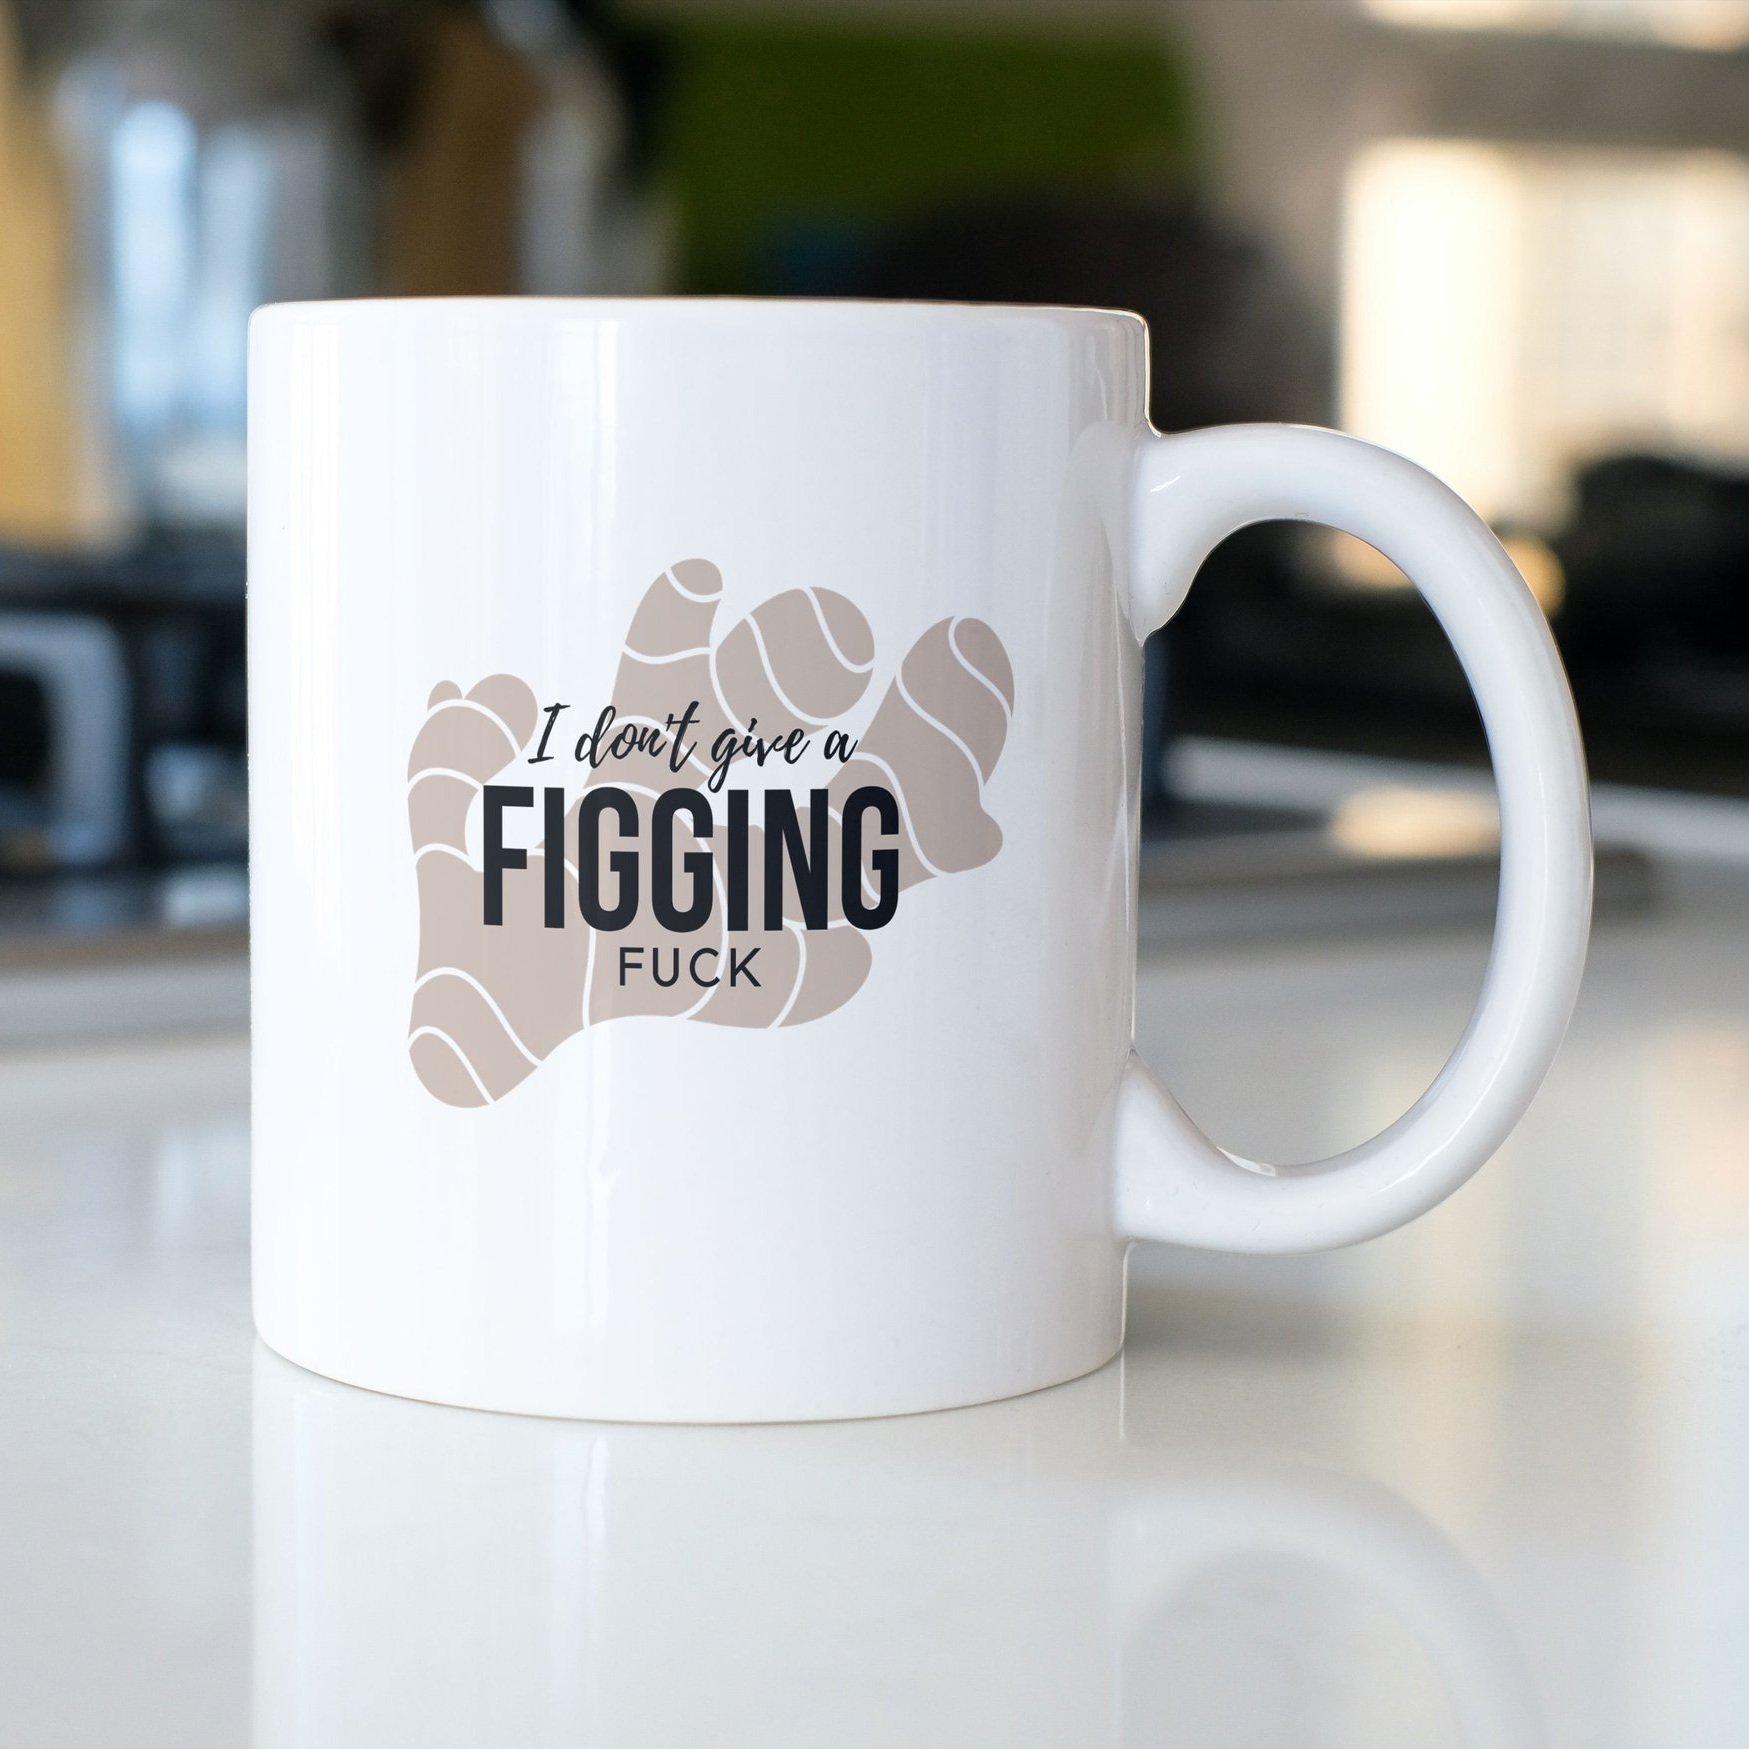 Ceramic-mug-on-the-desk_i-don%27t-give-a-figging-fuck.jpg